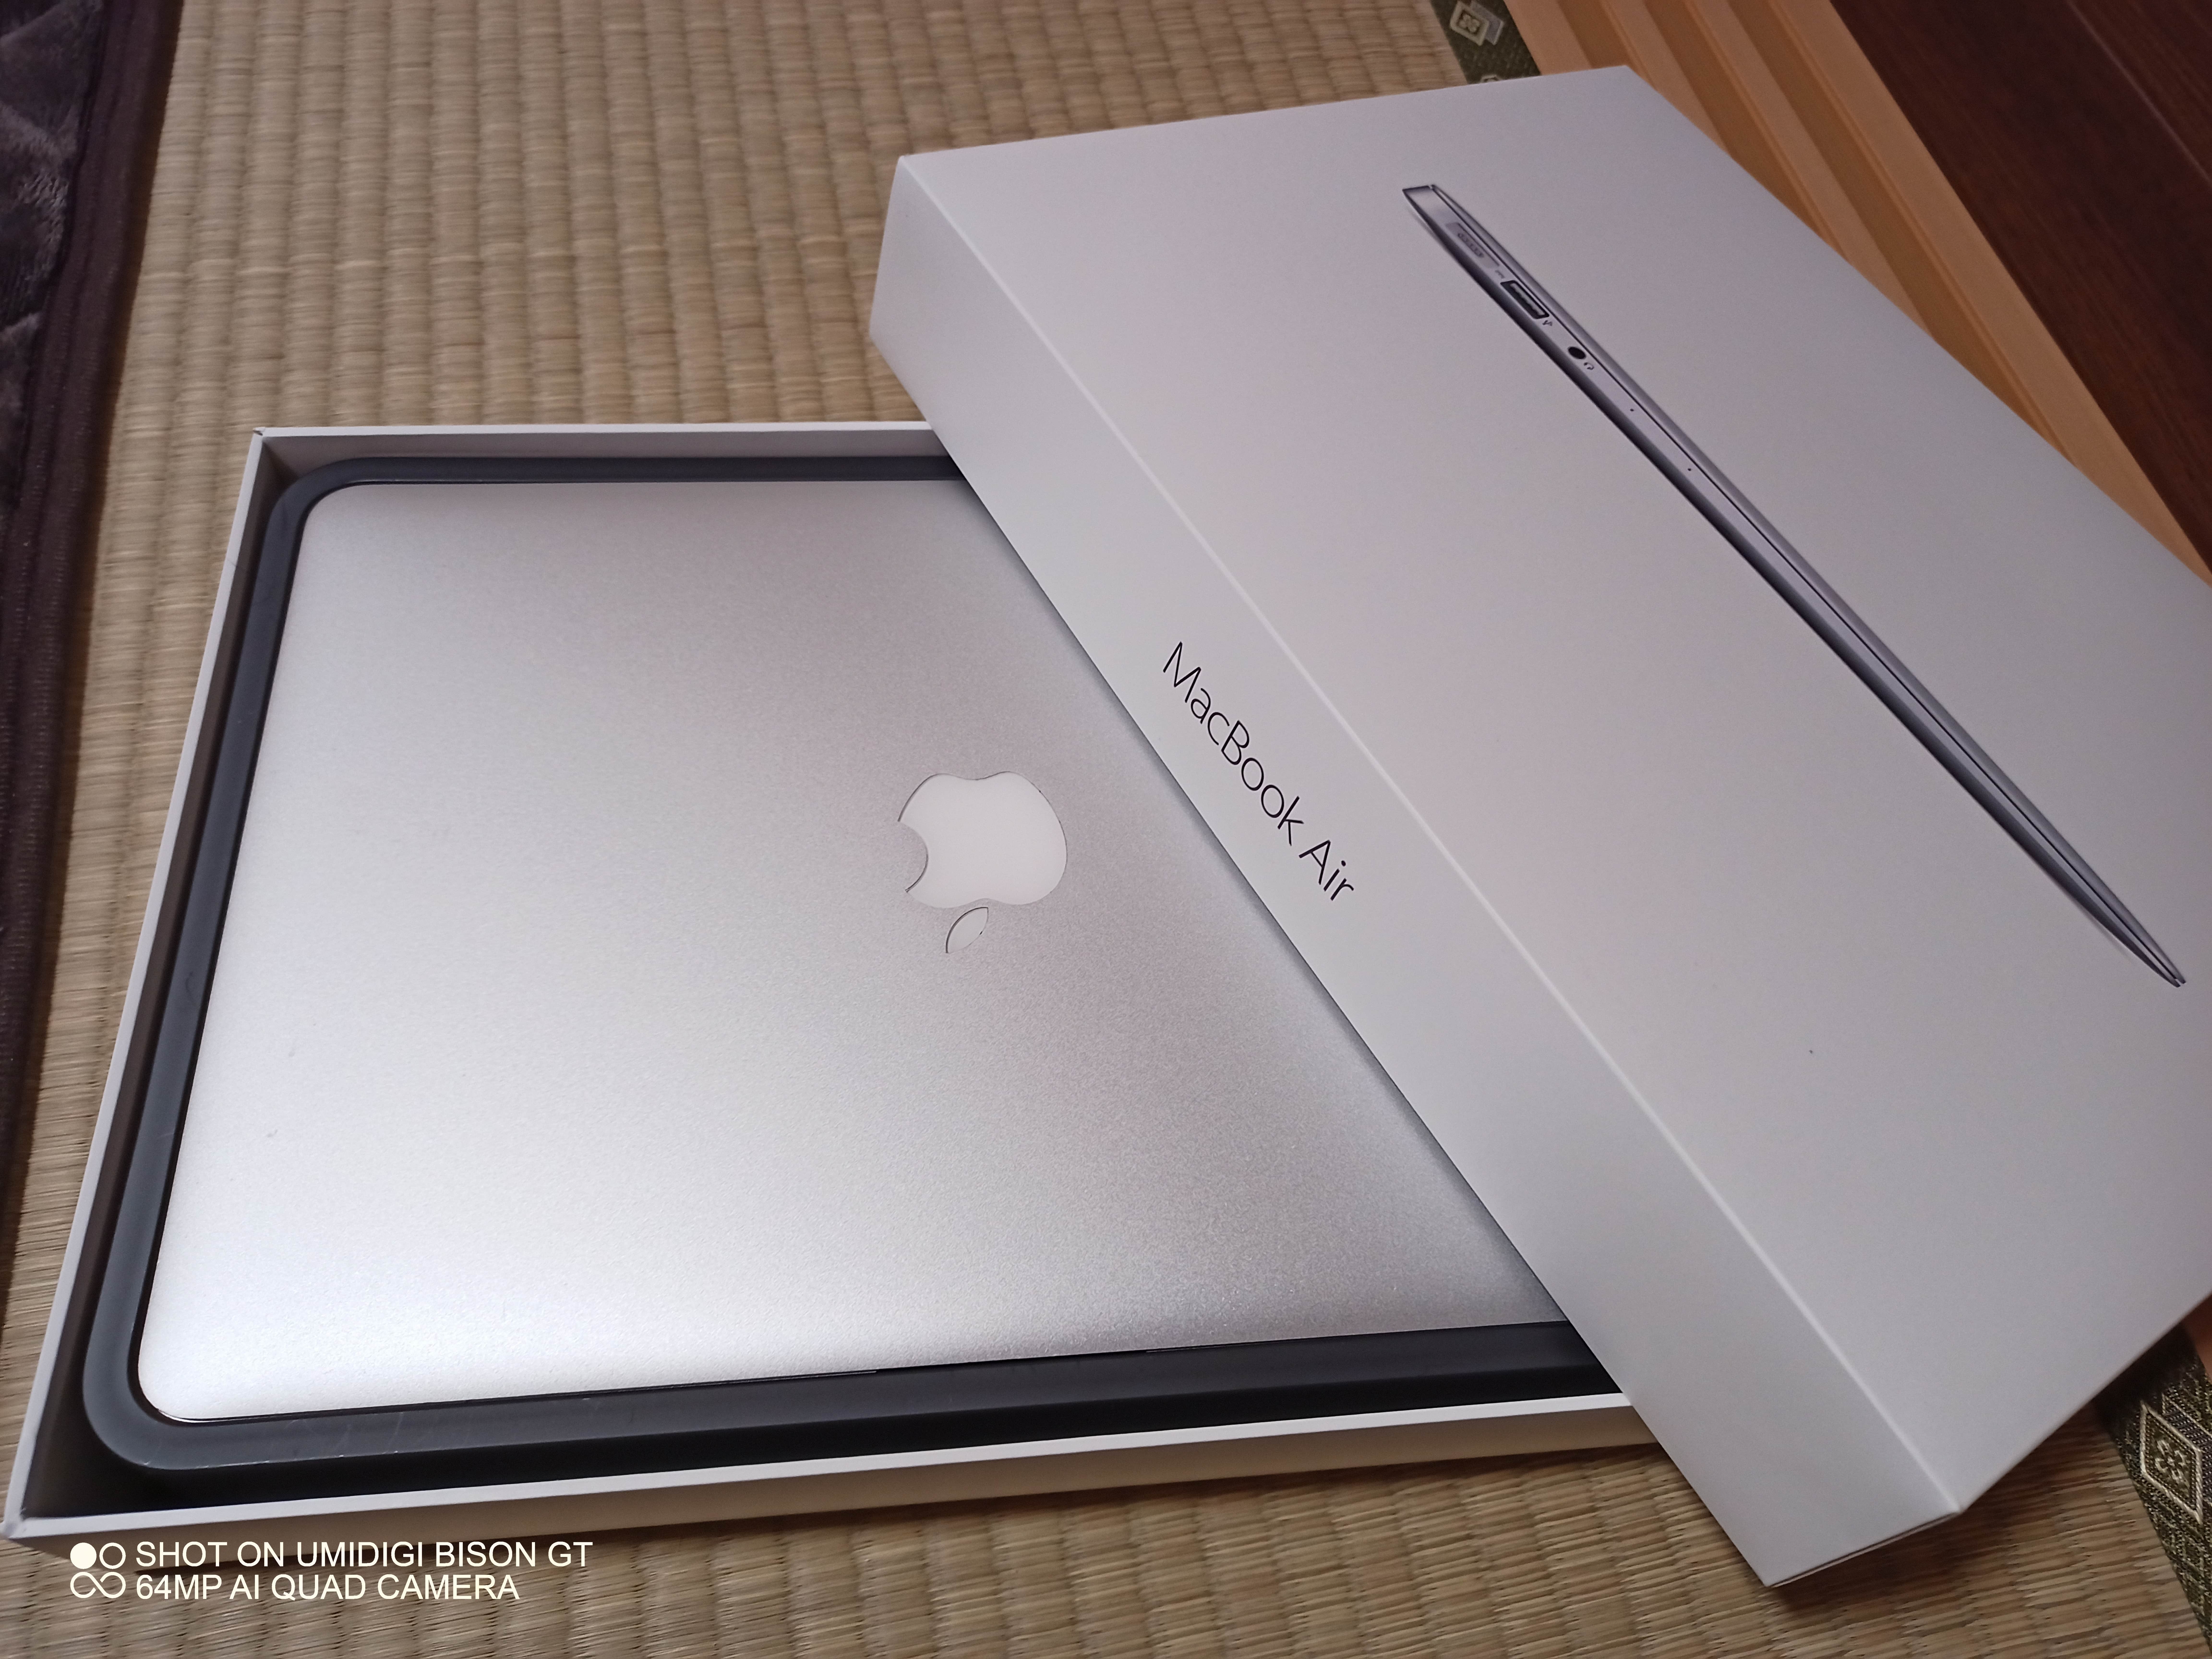 中古購入] MacBookAir2015が実はまだまだ戦えるんじゃないかって話 